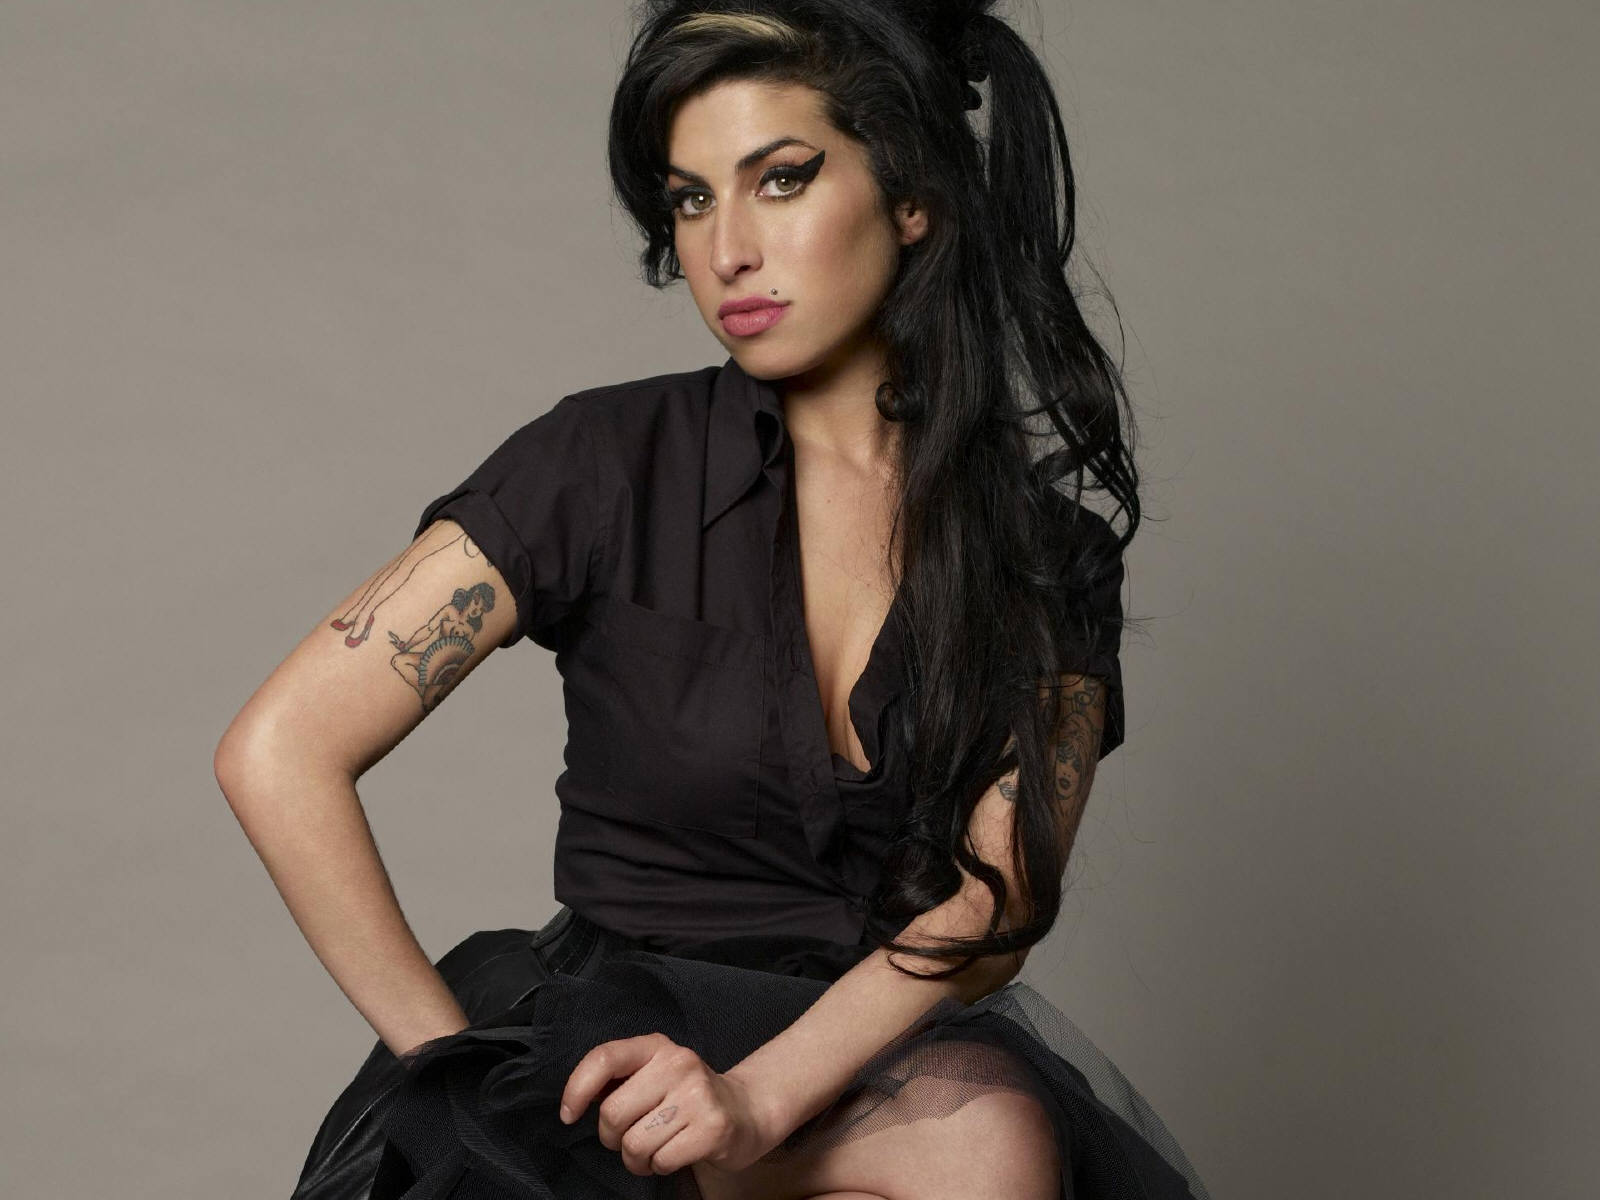 Fond d'ecran Amy Winehouse in black - Wallpaper